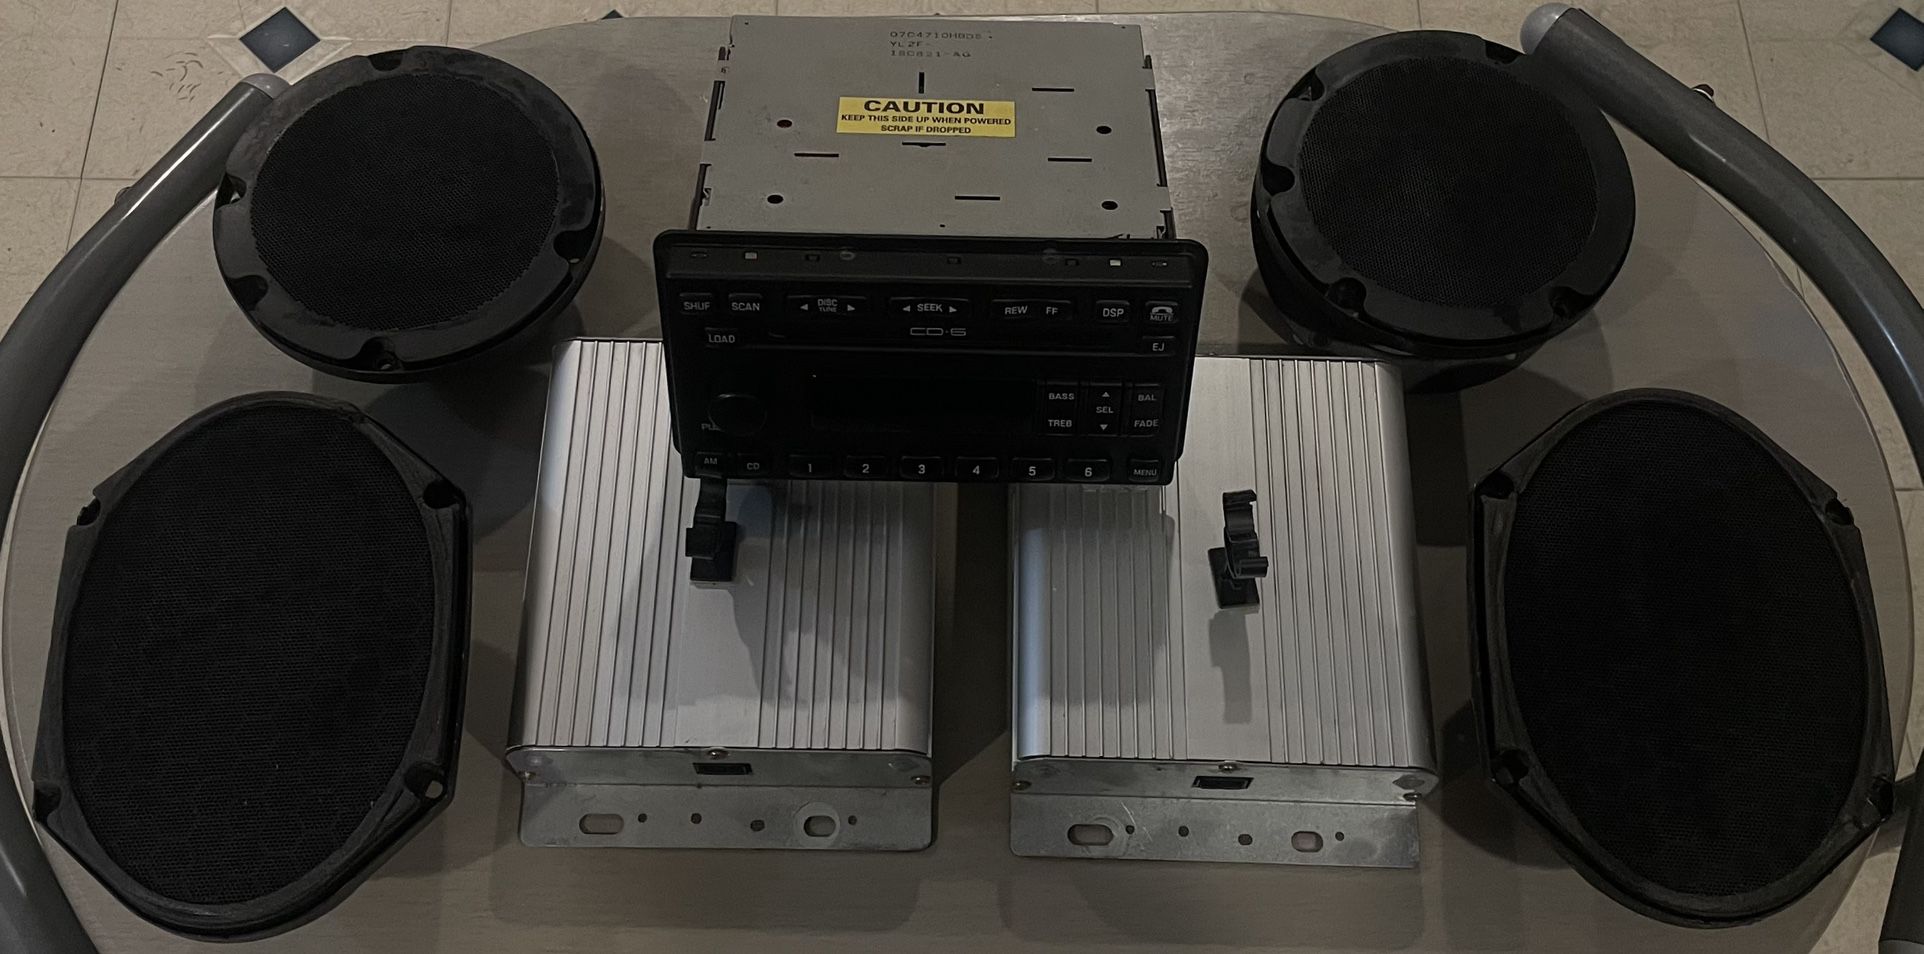 99-04 Mustang Full OEM Factory Mach Stereo System - Deck, Tweeters, Amps & Speakers 